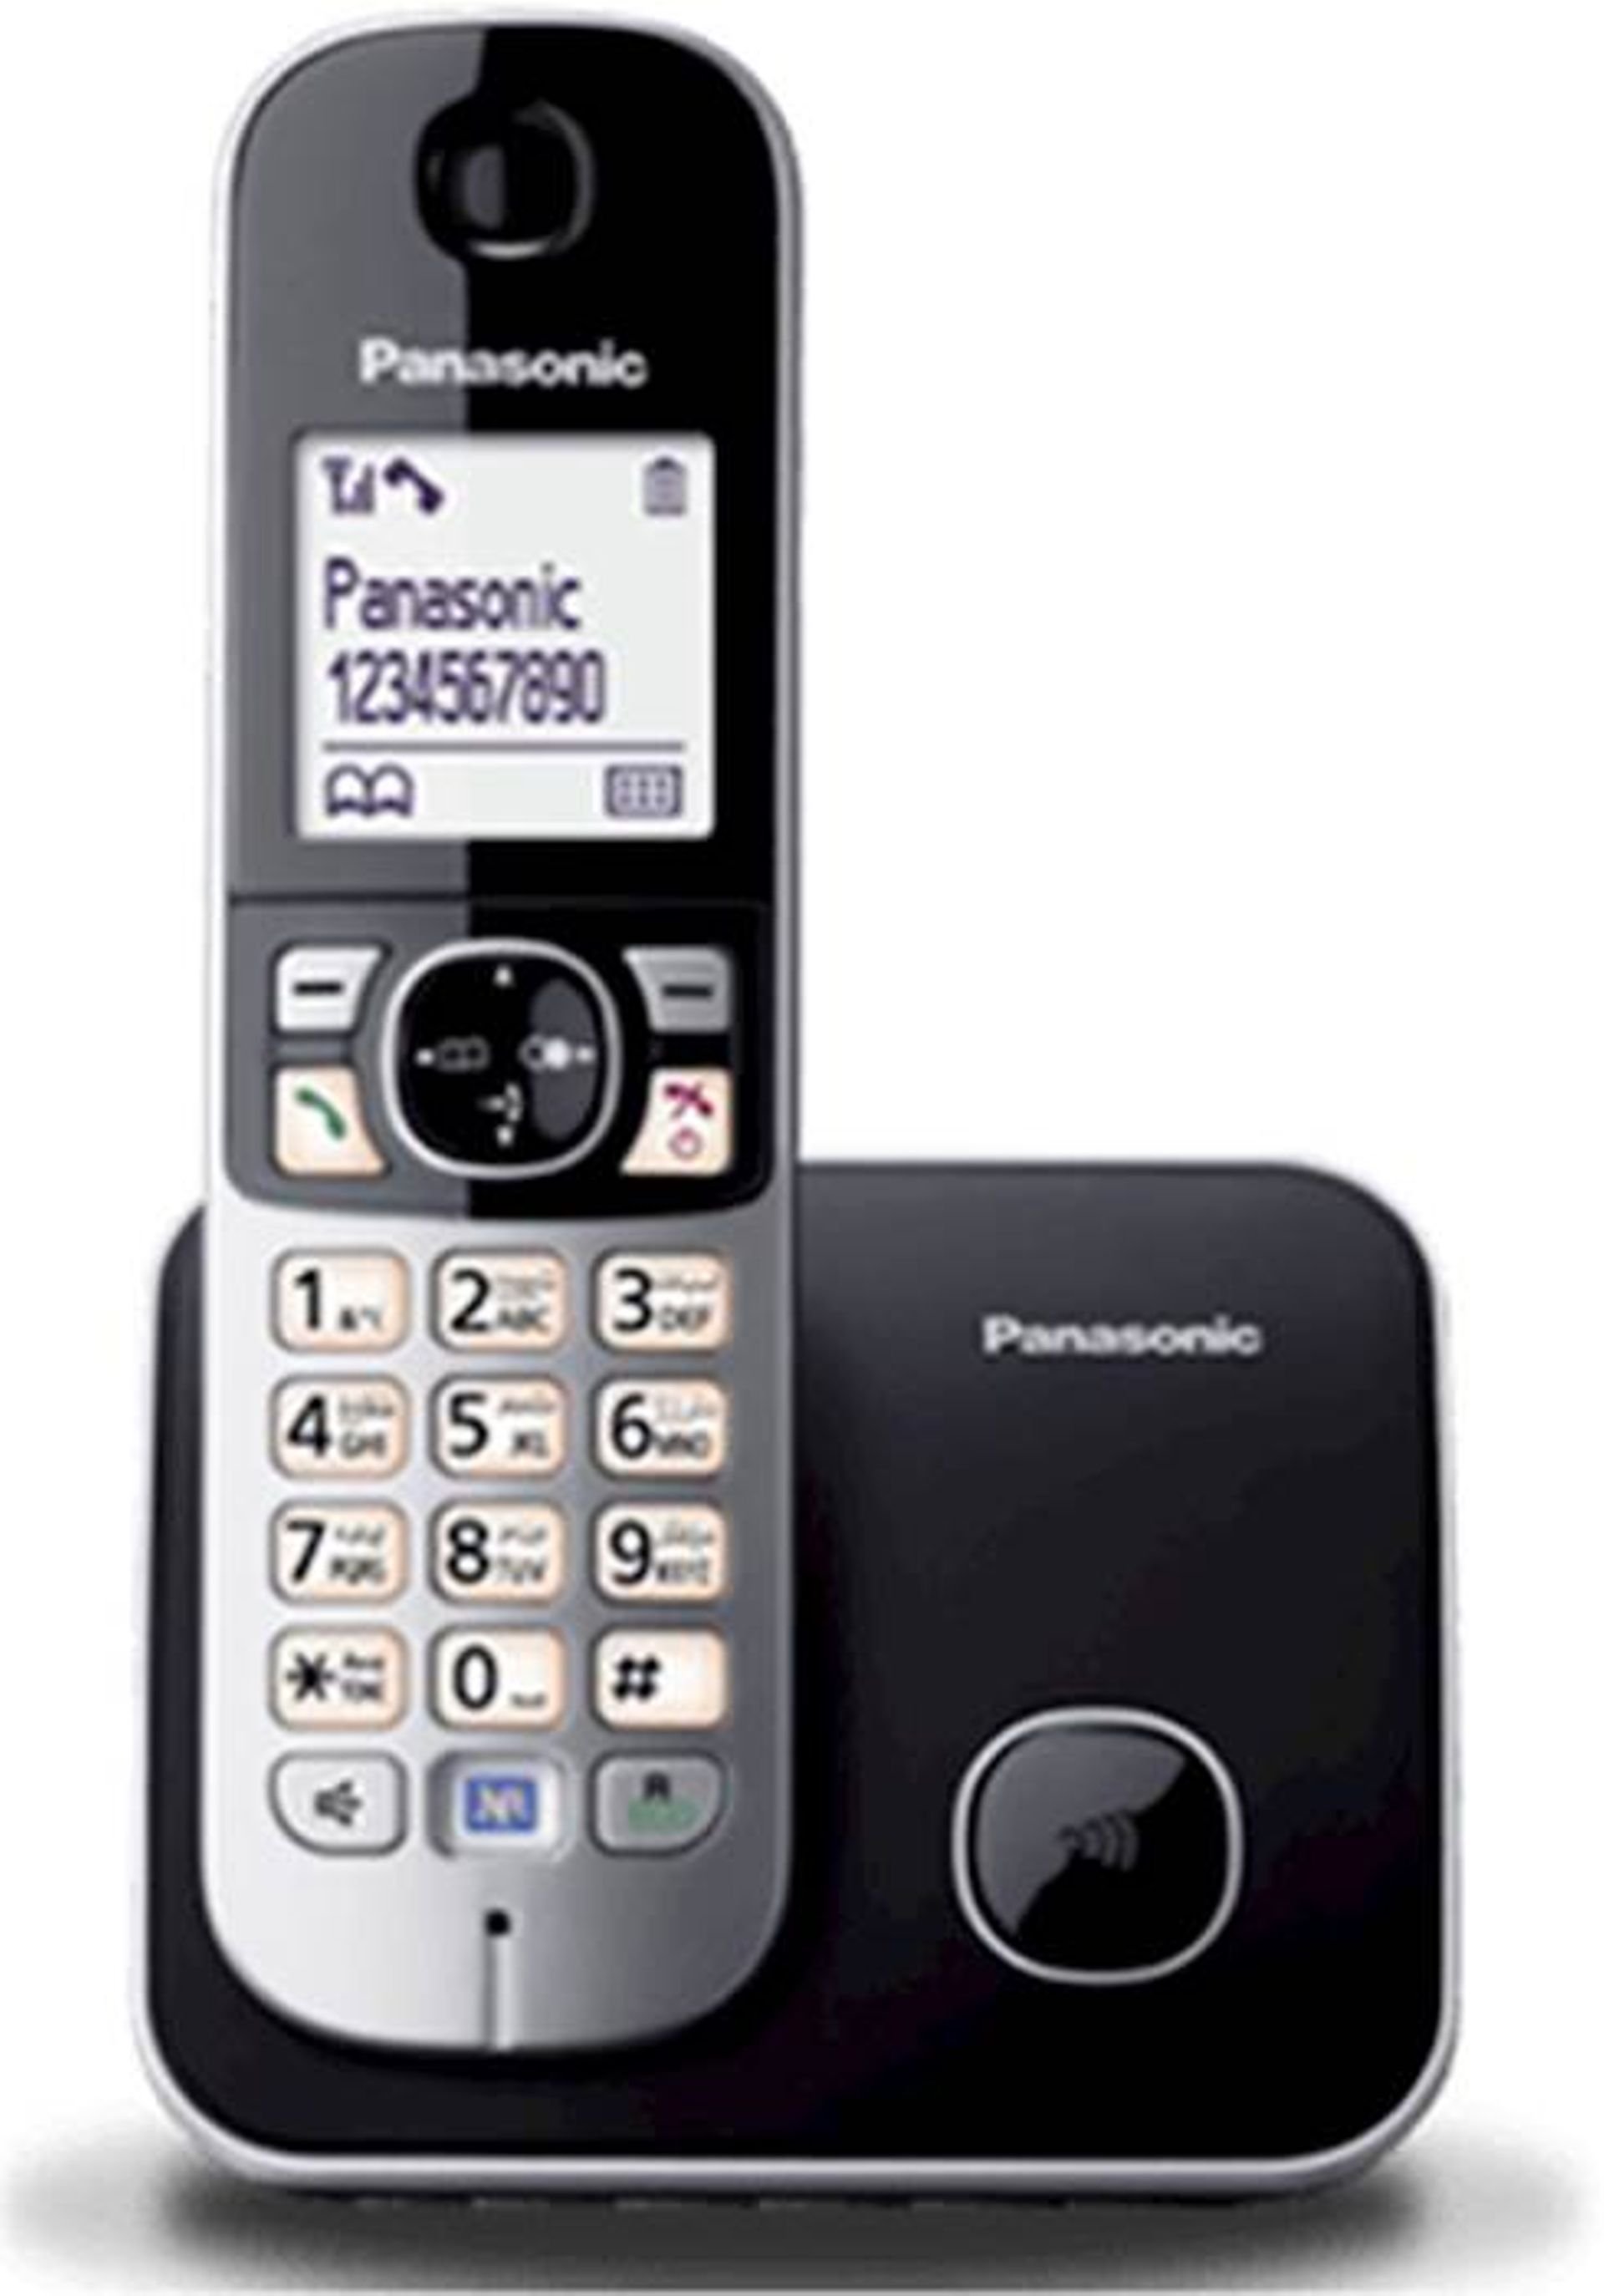 Телефон трубка с базой. Радиотелефон Panasonic KX-tg6811rub. DECT Panasonic KX-tg6811rub. Радиотелефон Panasonic KX-tg6821rub. Радиотелефон Panasonic KX-tg6811.